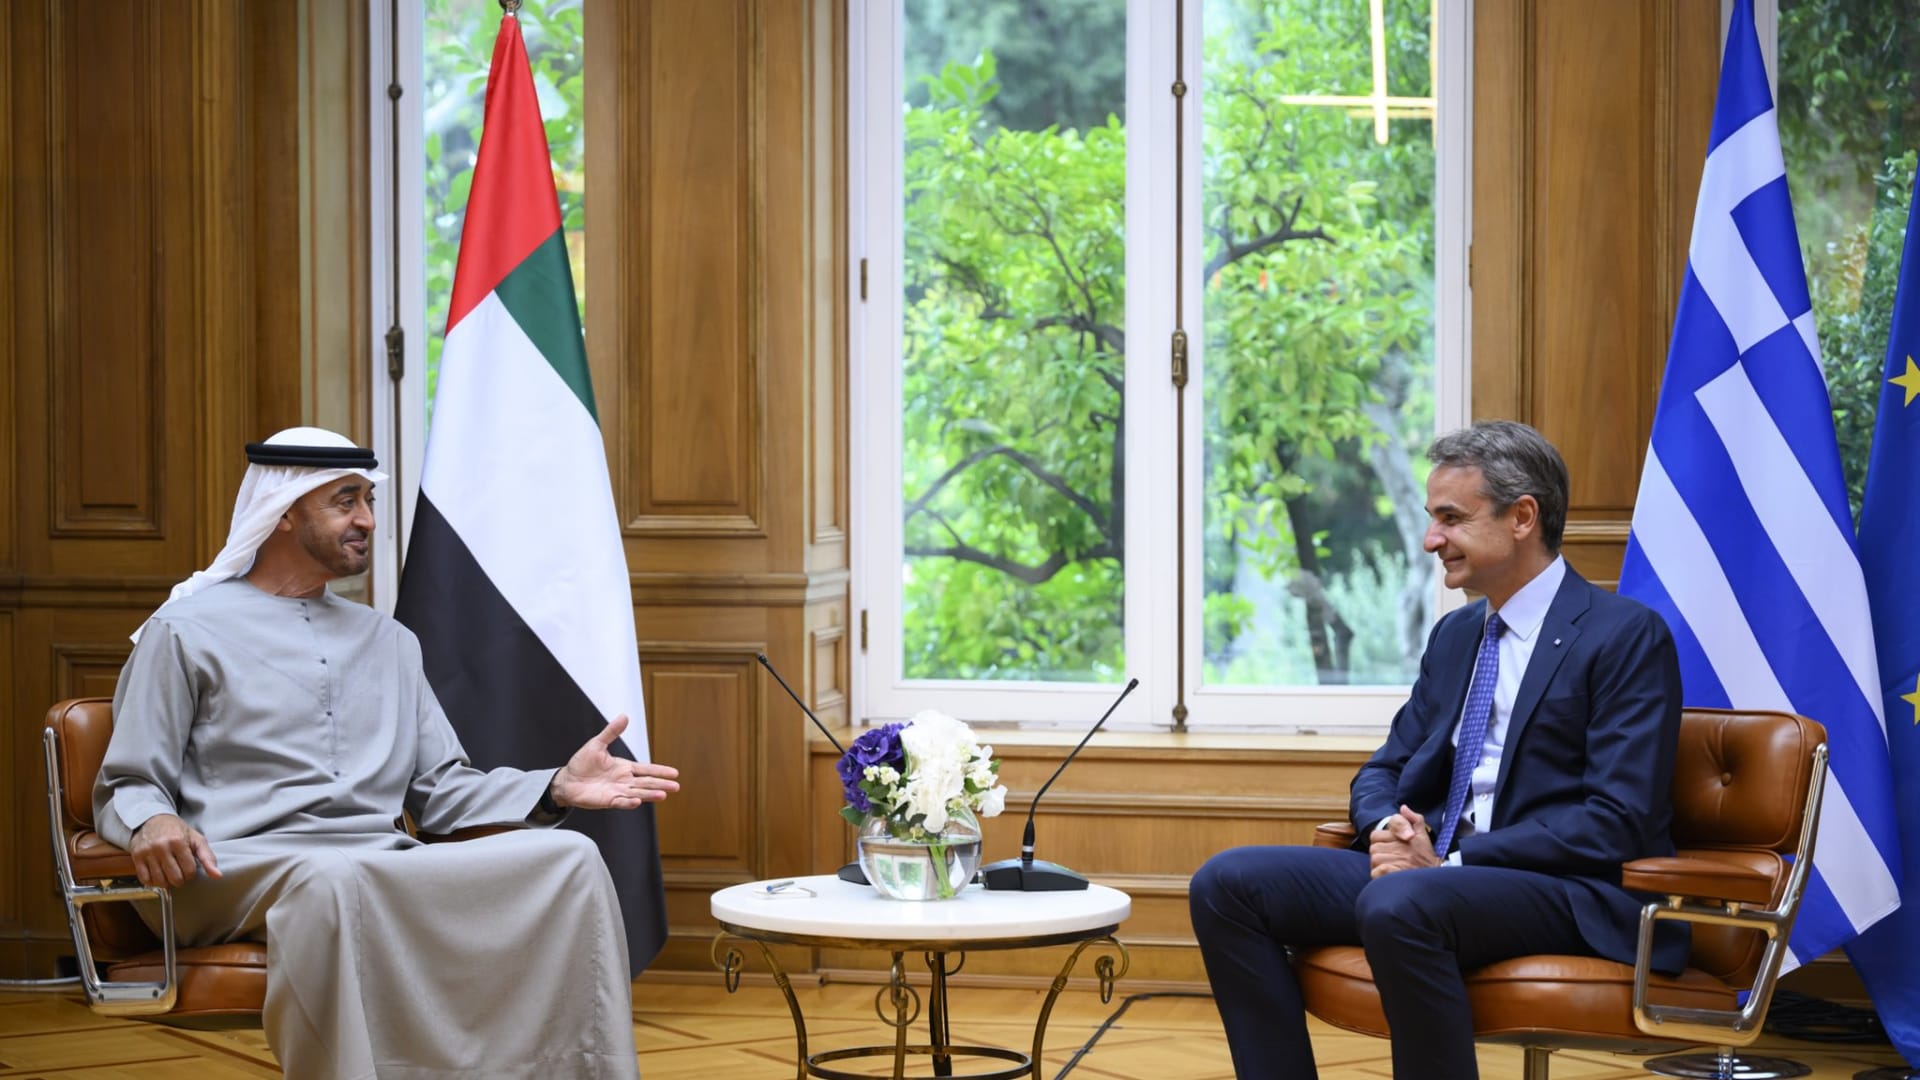 جانب  من لقاء  الشيخ محمد بن زايد آل نهيان رئيس الإمارات و رئيس الوزراء اليوناني كيرياكوس ميتسوتاكيس